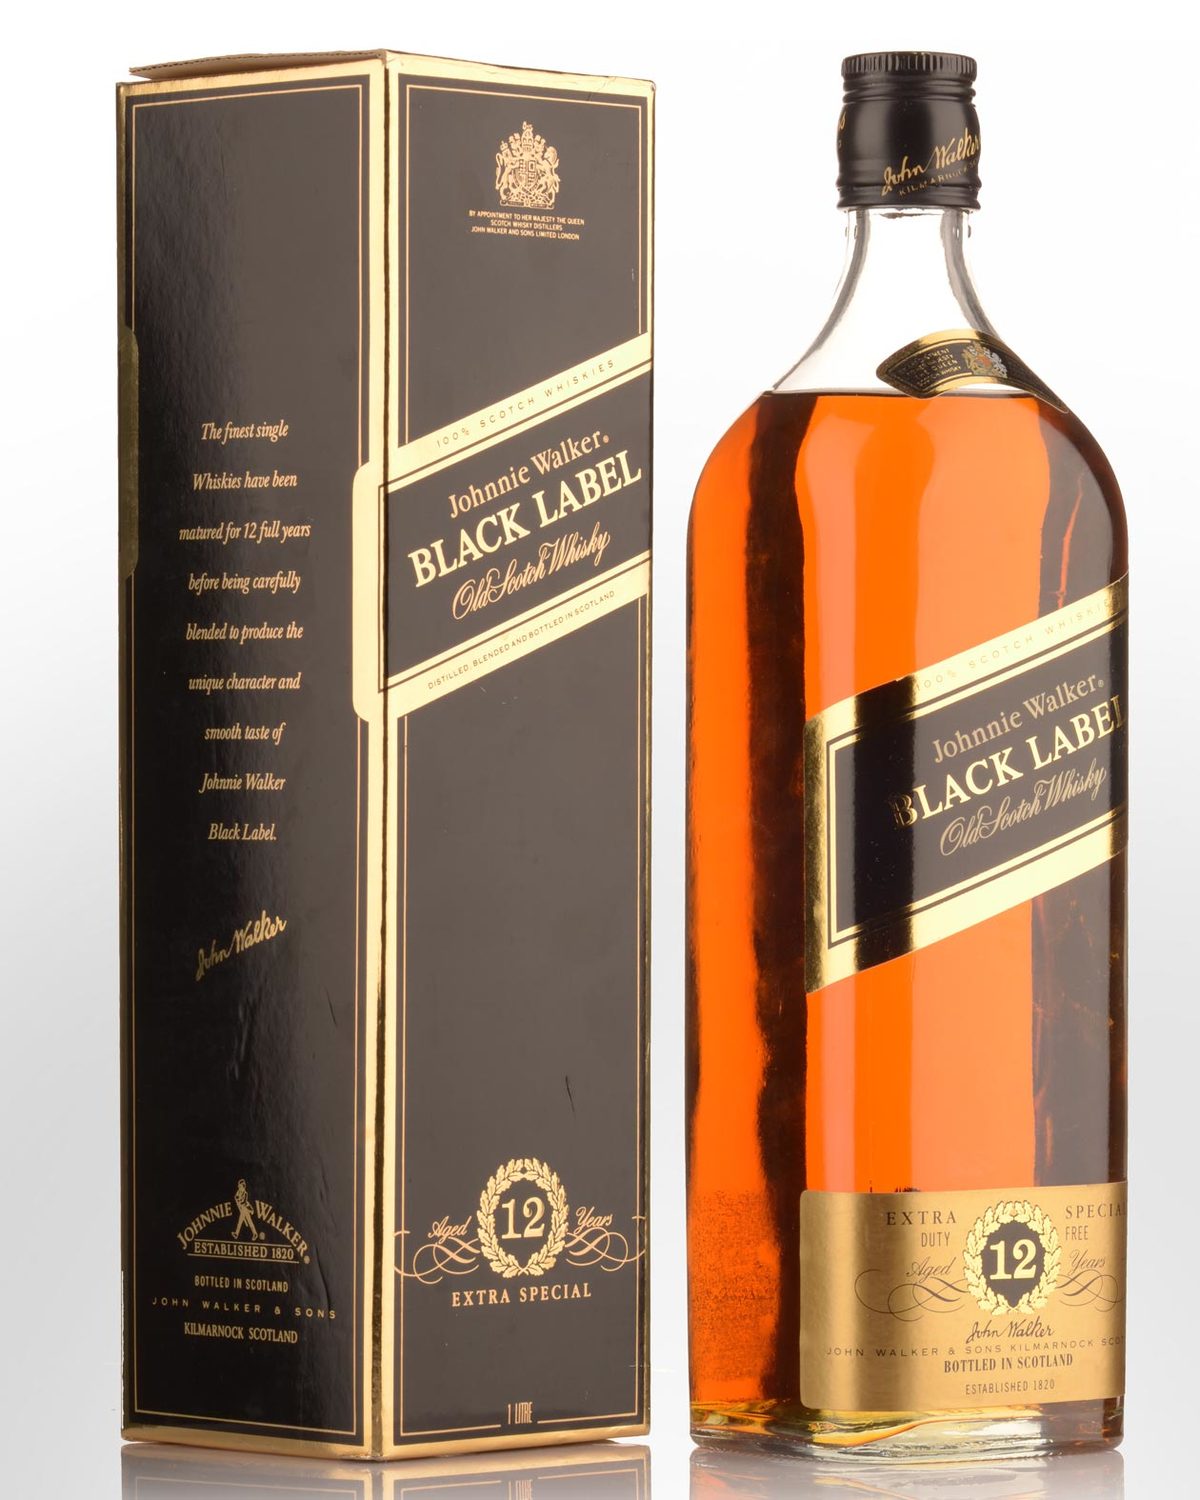 Johnnie Walker Black Label 12 Year Old Scotch Whisky – Grain & Vine